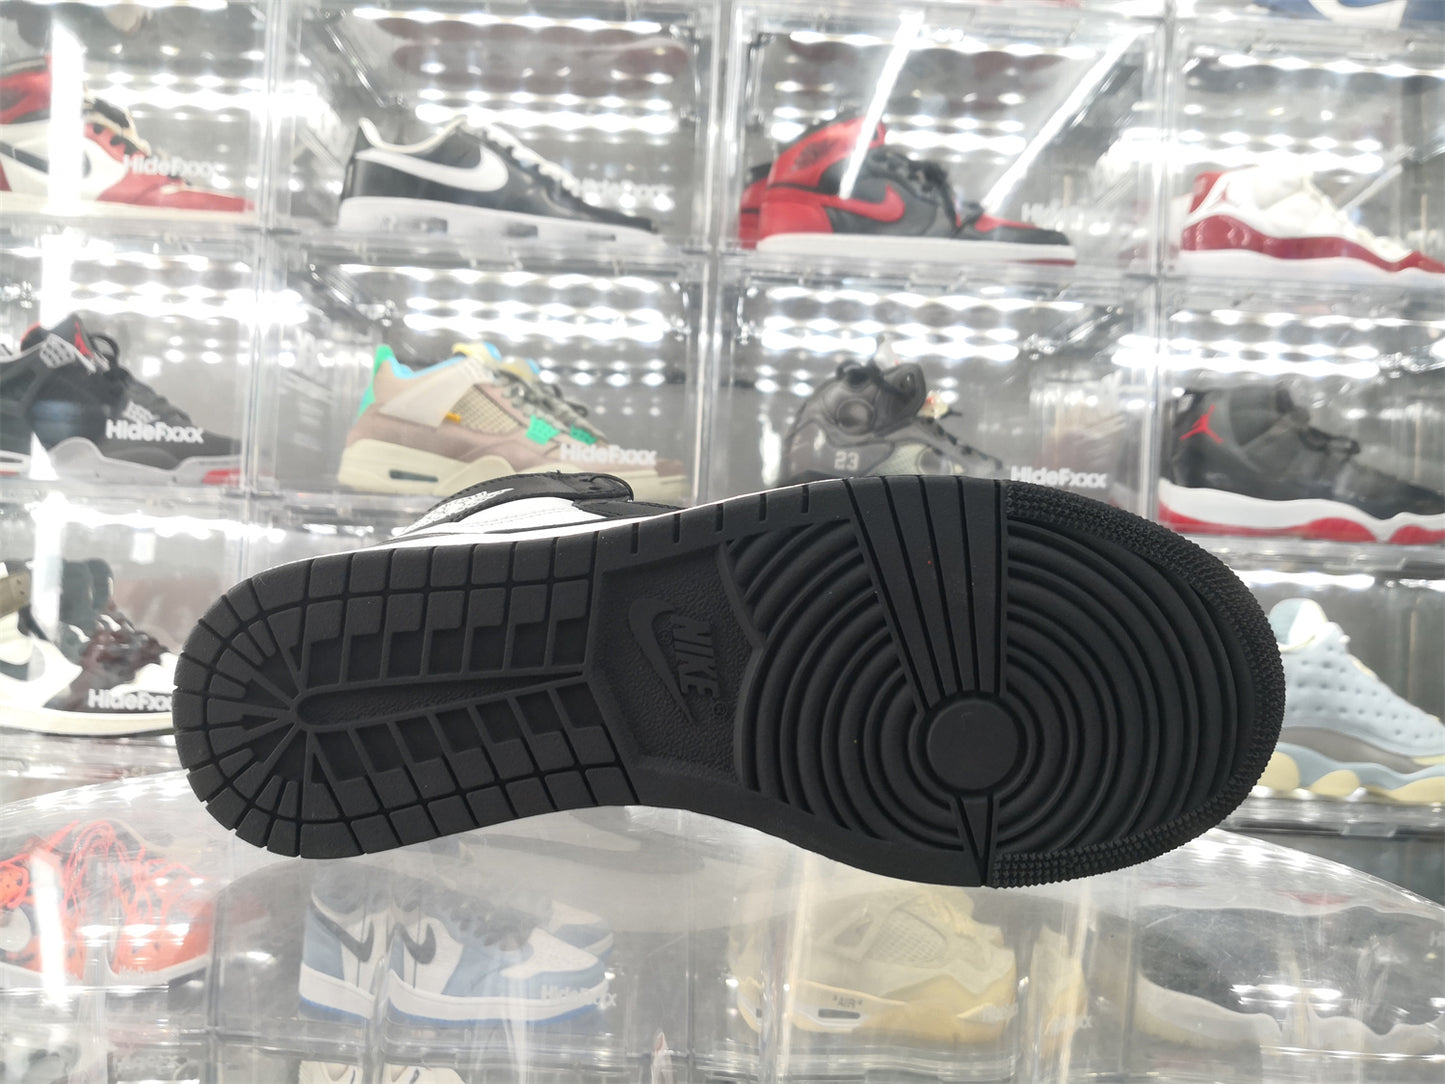 NIKE x AIR JORDAN - Nike Air Jordan 1 High 85 OG Black White Sneakers (2023)